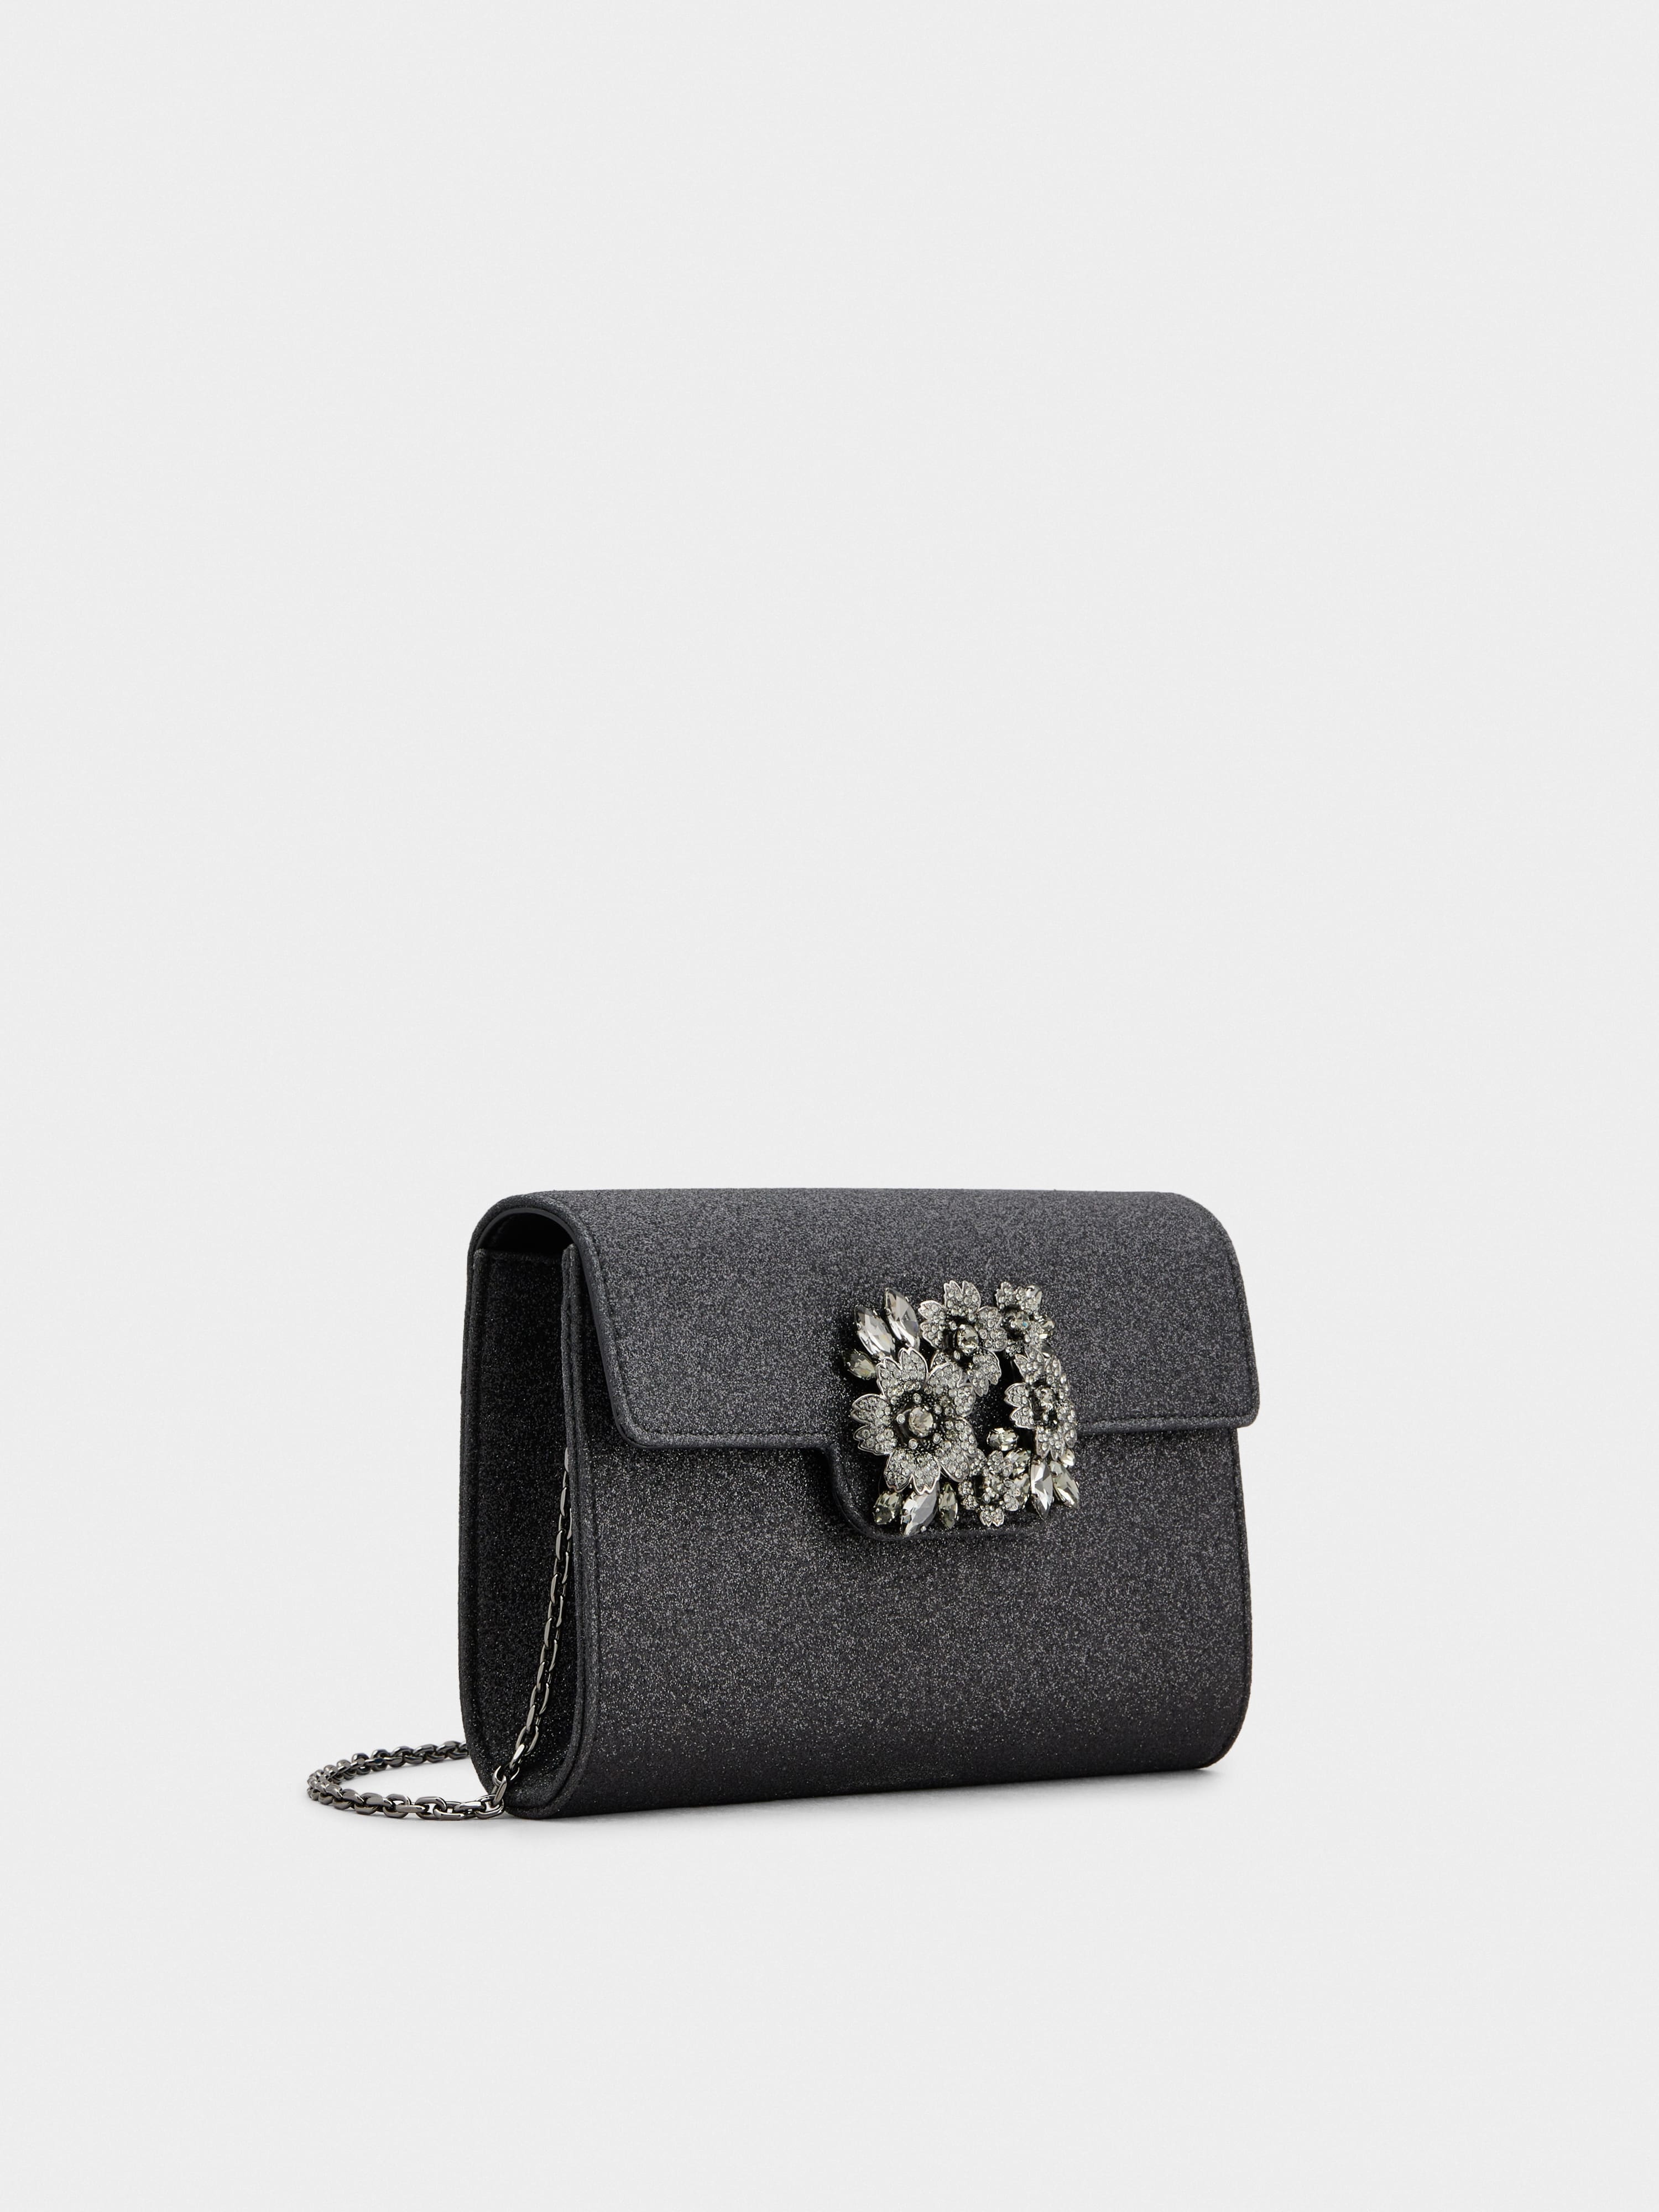 Bouquet Strass Dark Mini Clutch Bag in Glitter Fabric - 3